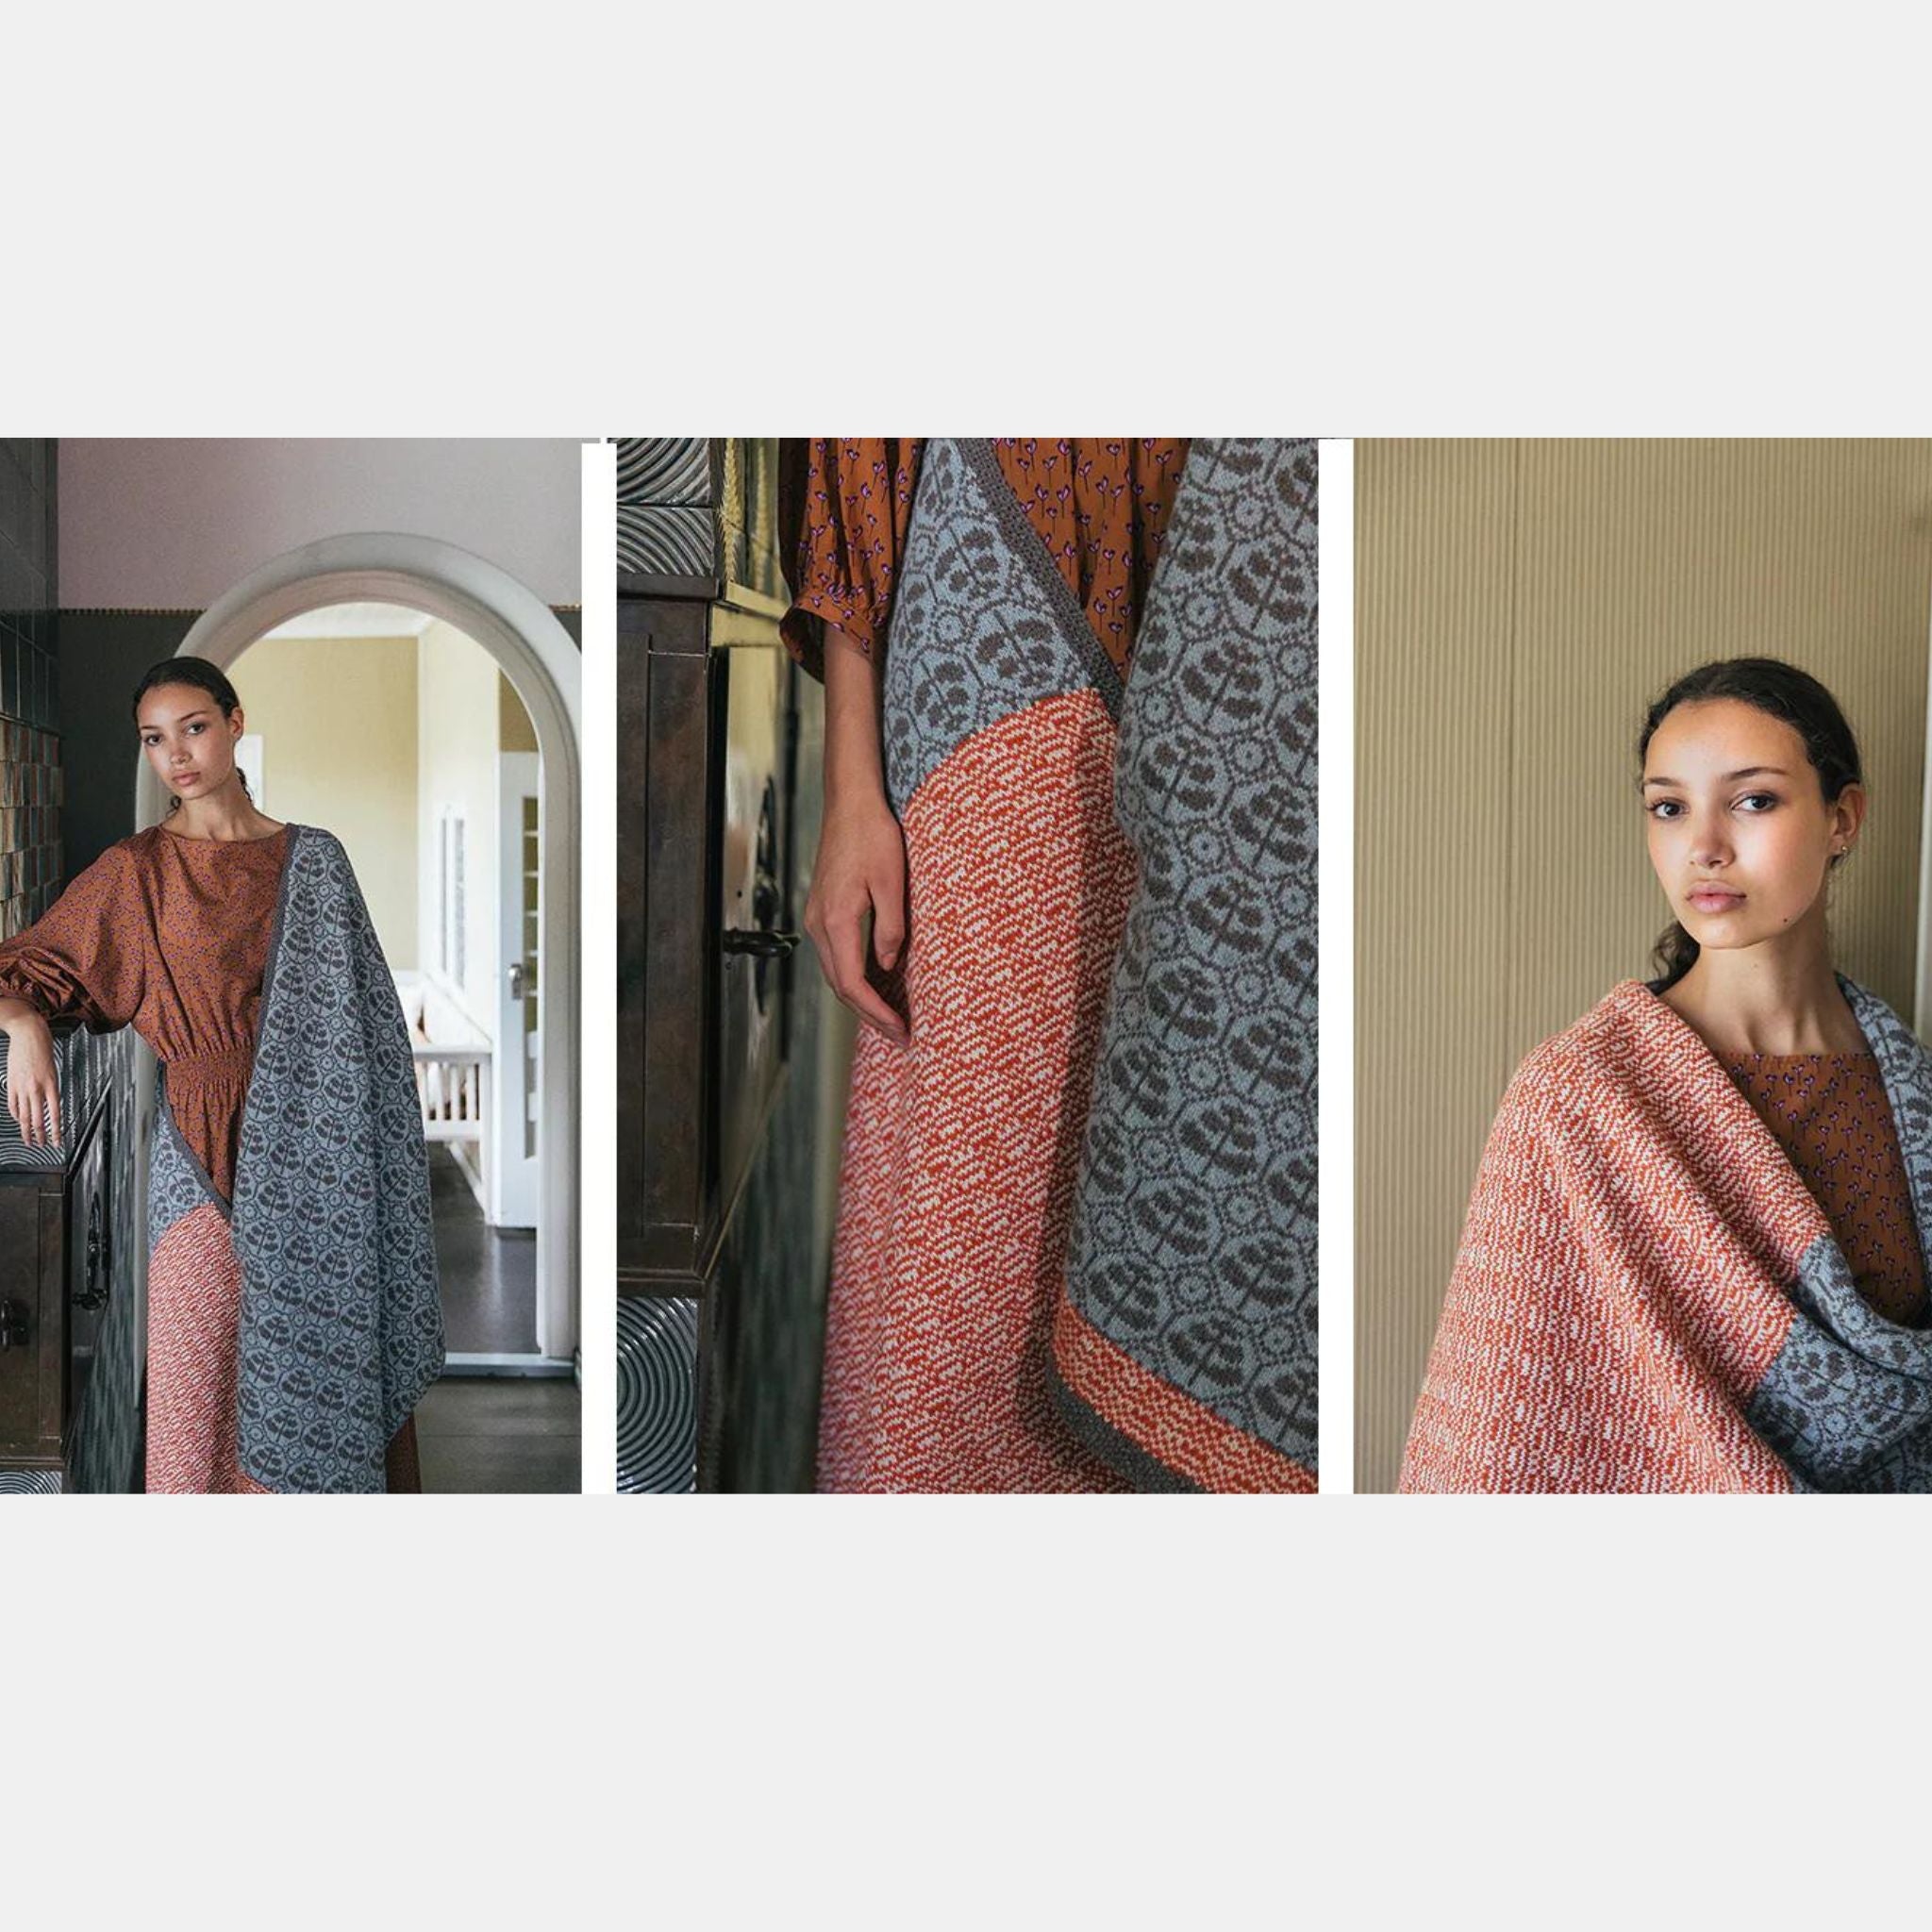 The Knitted Fabric by Dee Hardwicke Garden Wrap